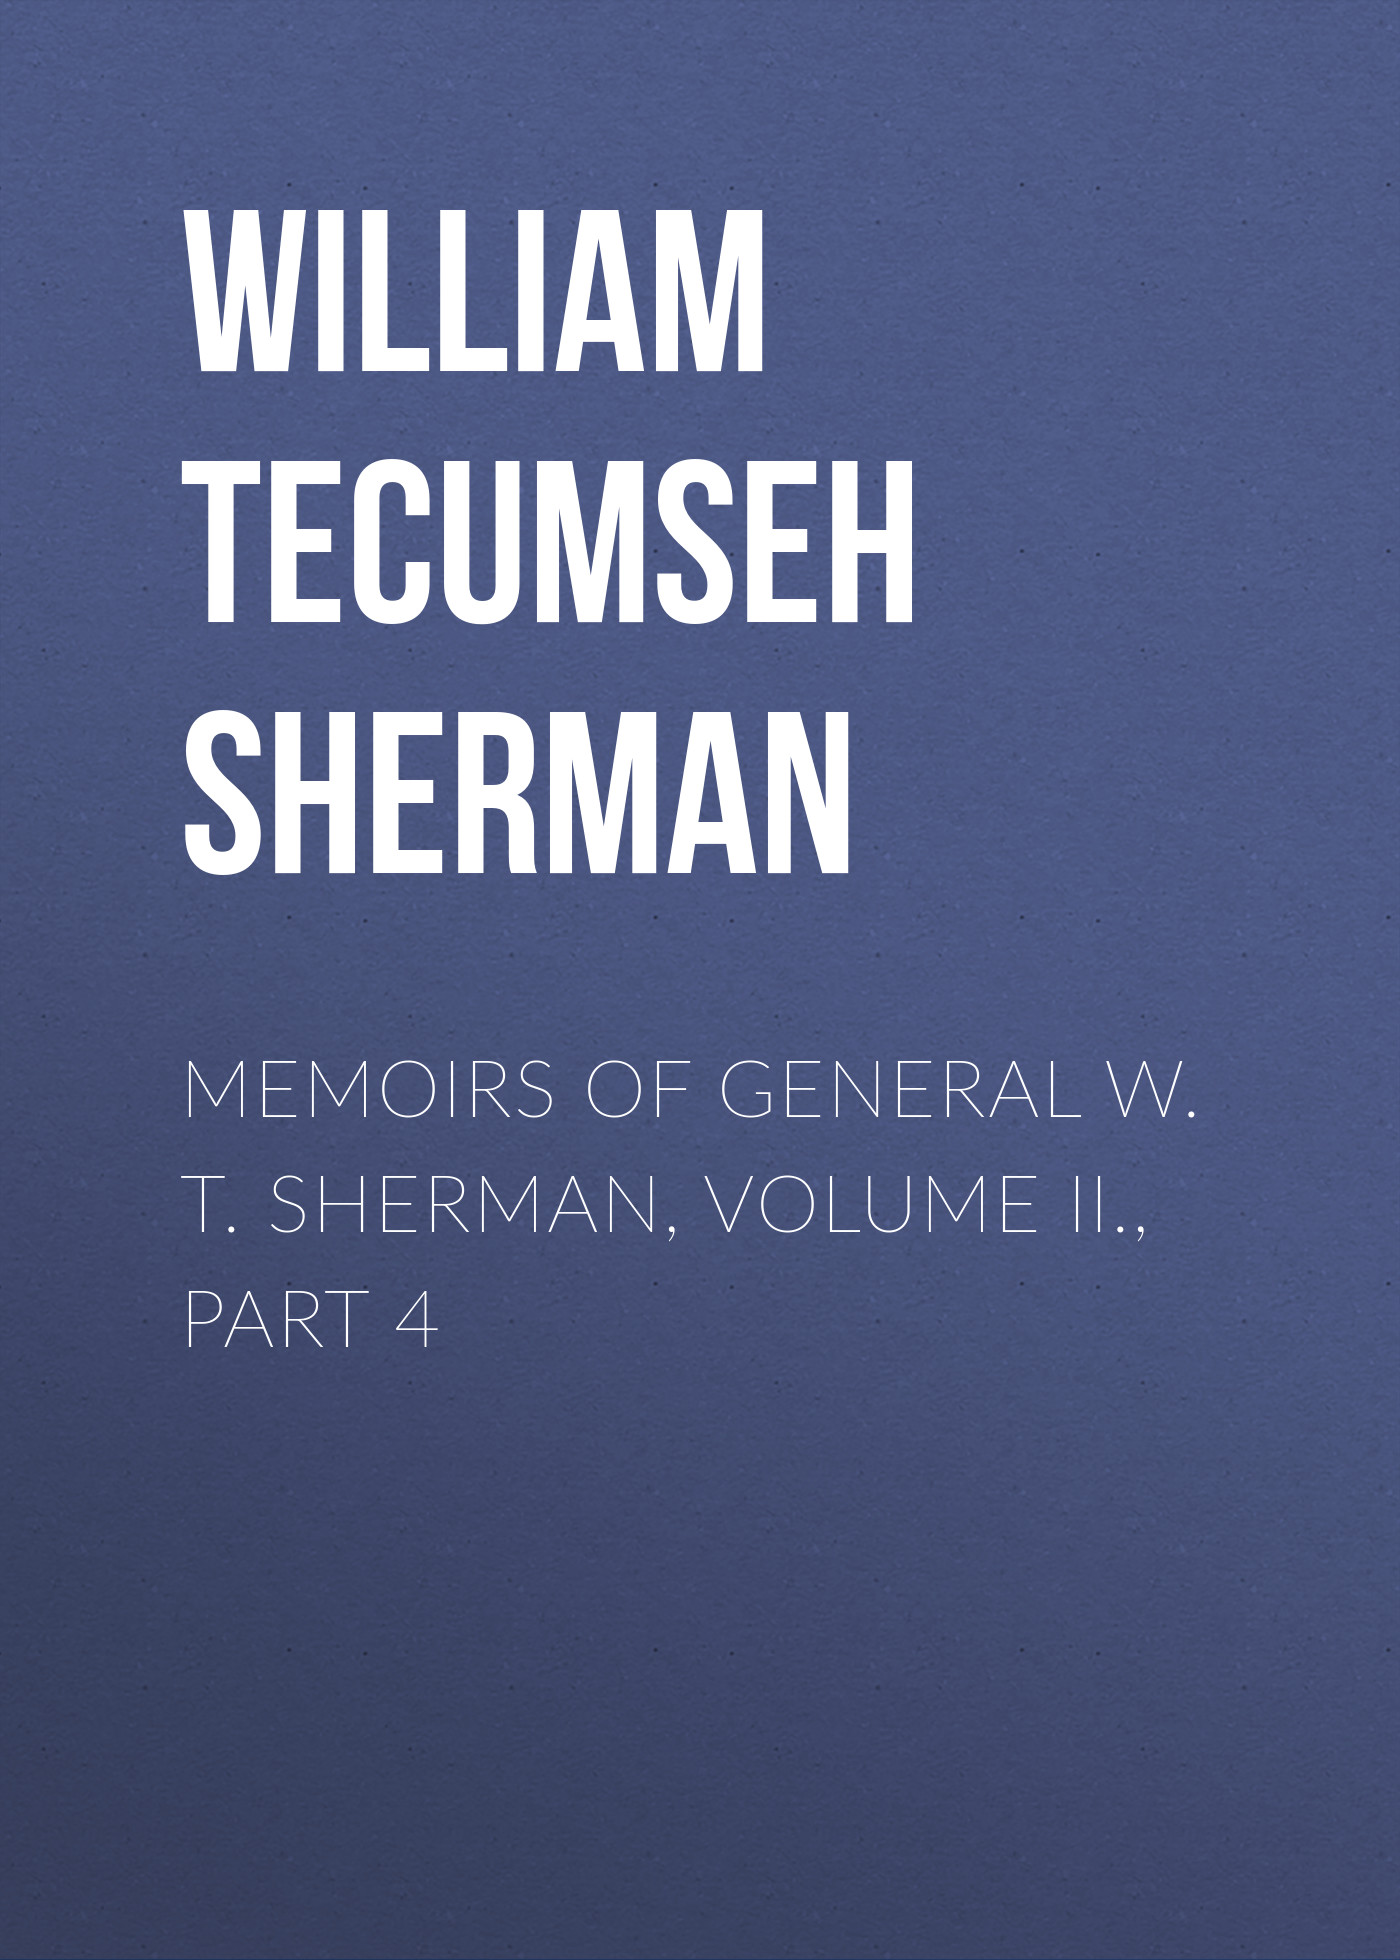 Книга Memoirs of General W. T. Sherman, Volume II., Part 4 из серии , созданная William Tecumseh Sherman, может относится к жанру Биографии и Мемуары, История, Зарубежная образовательная литература, Зарубежная старинная литература, Зарубежная классика. Стоимость электронной книги Memoirs of General W. T. Sherman, Volume II., Part 4 с идентификатором 35006953 составляет 0 руб.